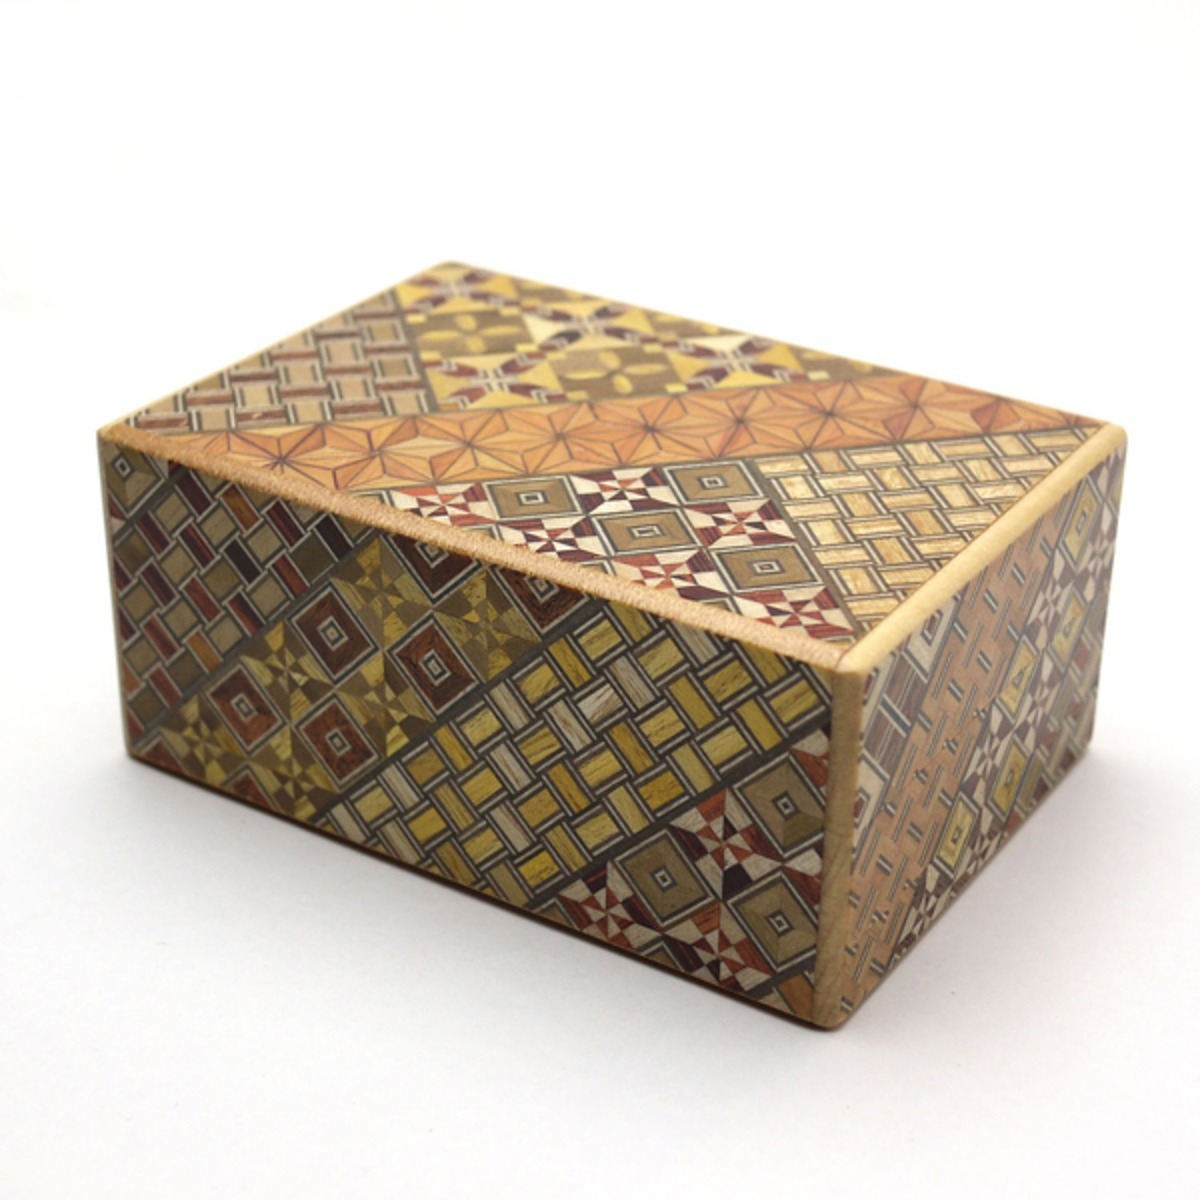 仕掛けで開くからくり箱 箱根寄木 秘密箱 4寸サイズ 10回仕掛け 細工箱 日本製の伝統工芸品 Yosegi Magic Box スマートギフト